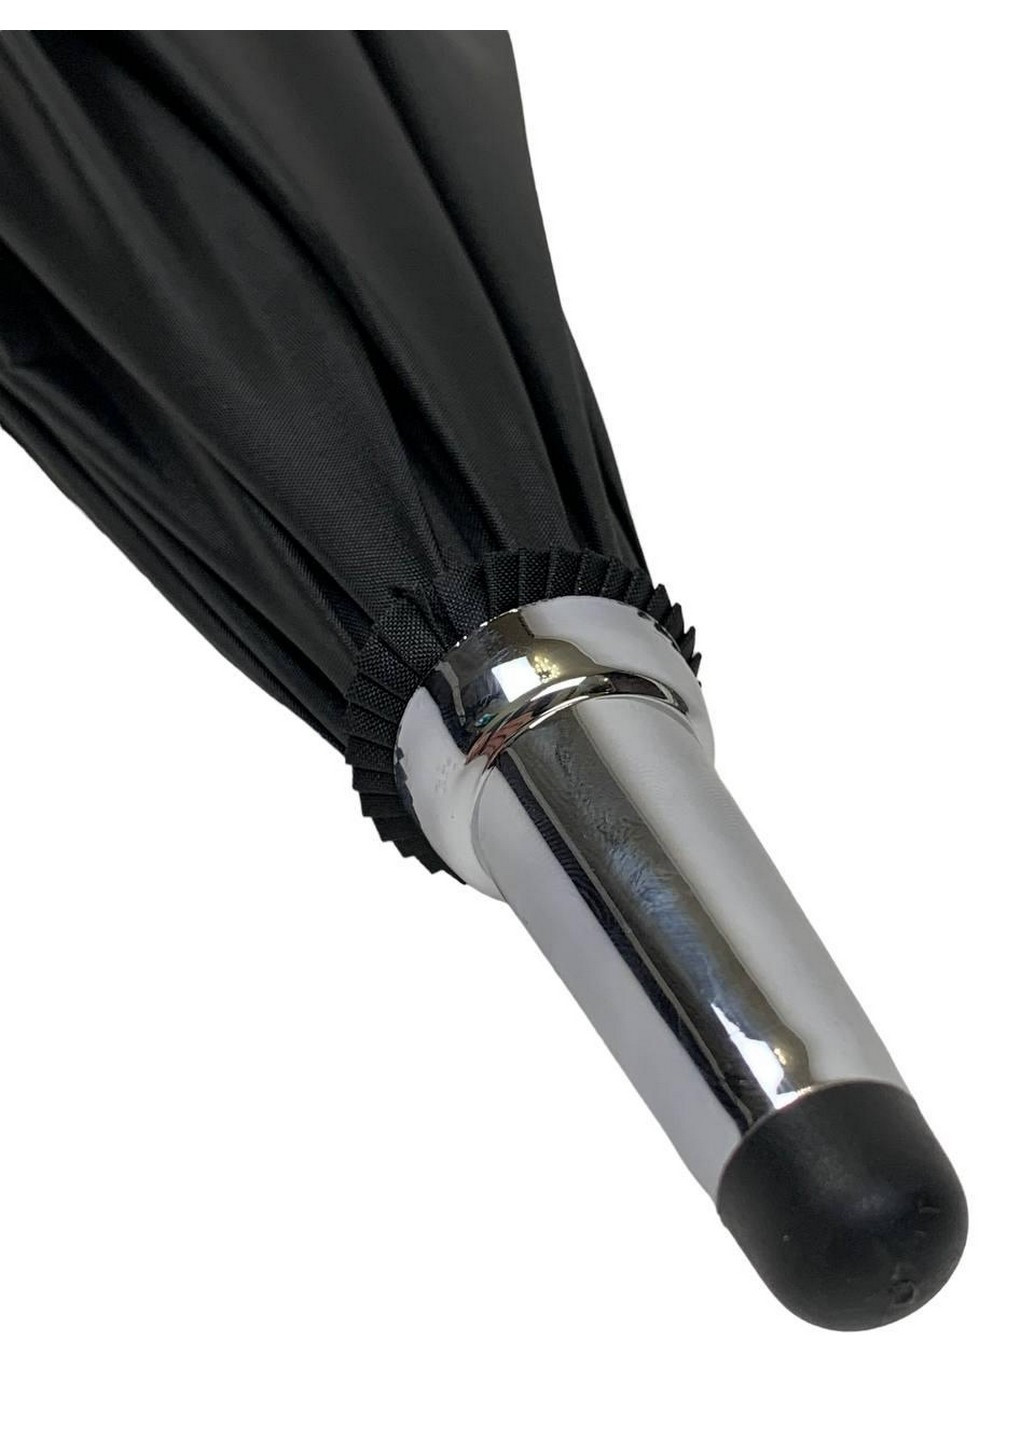 Жіночий напівавтомат зонт 120 см RST (259212859)